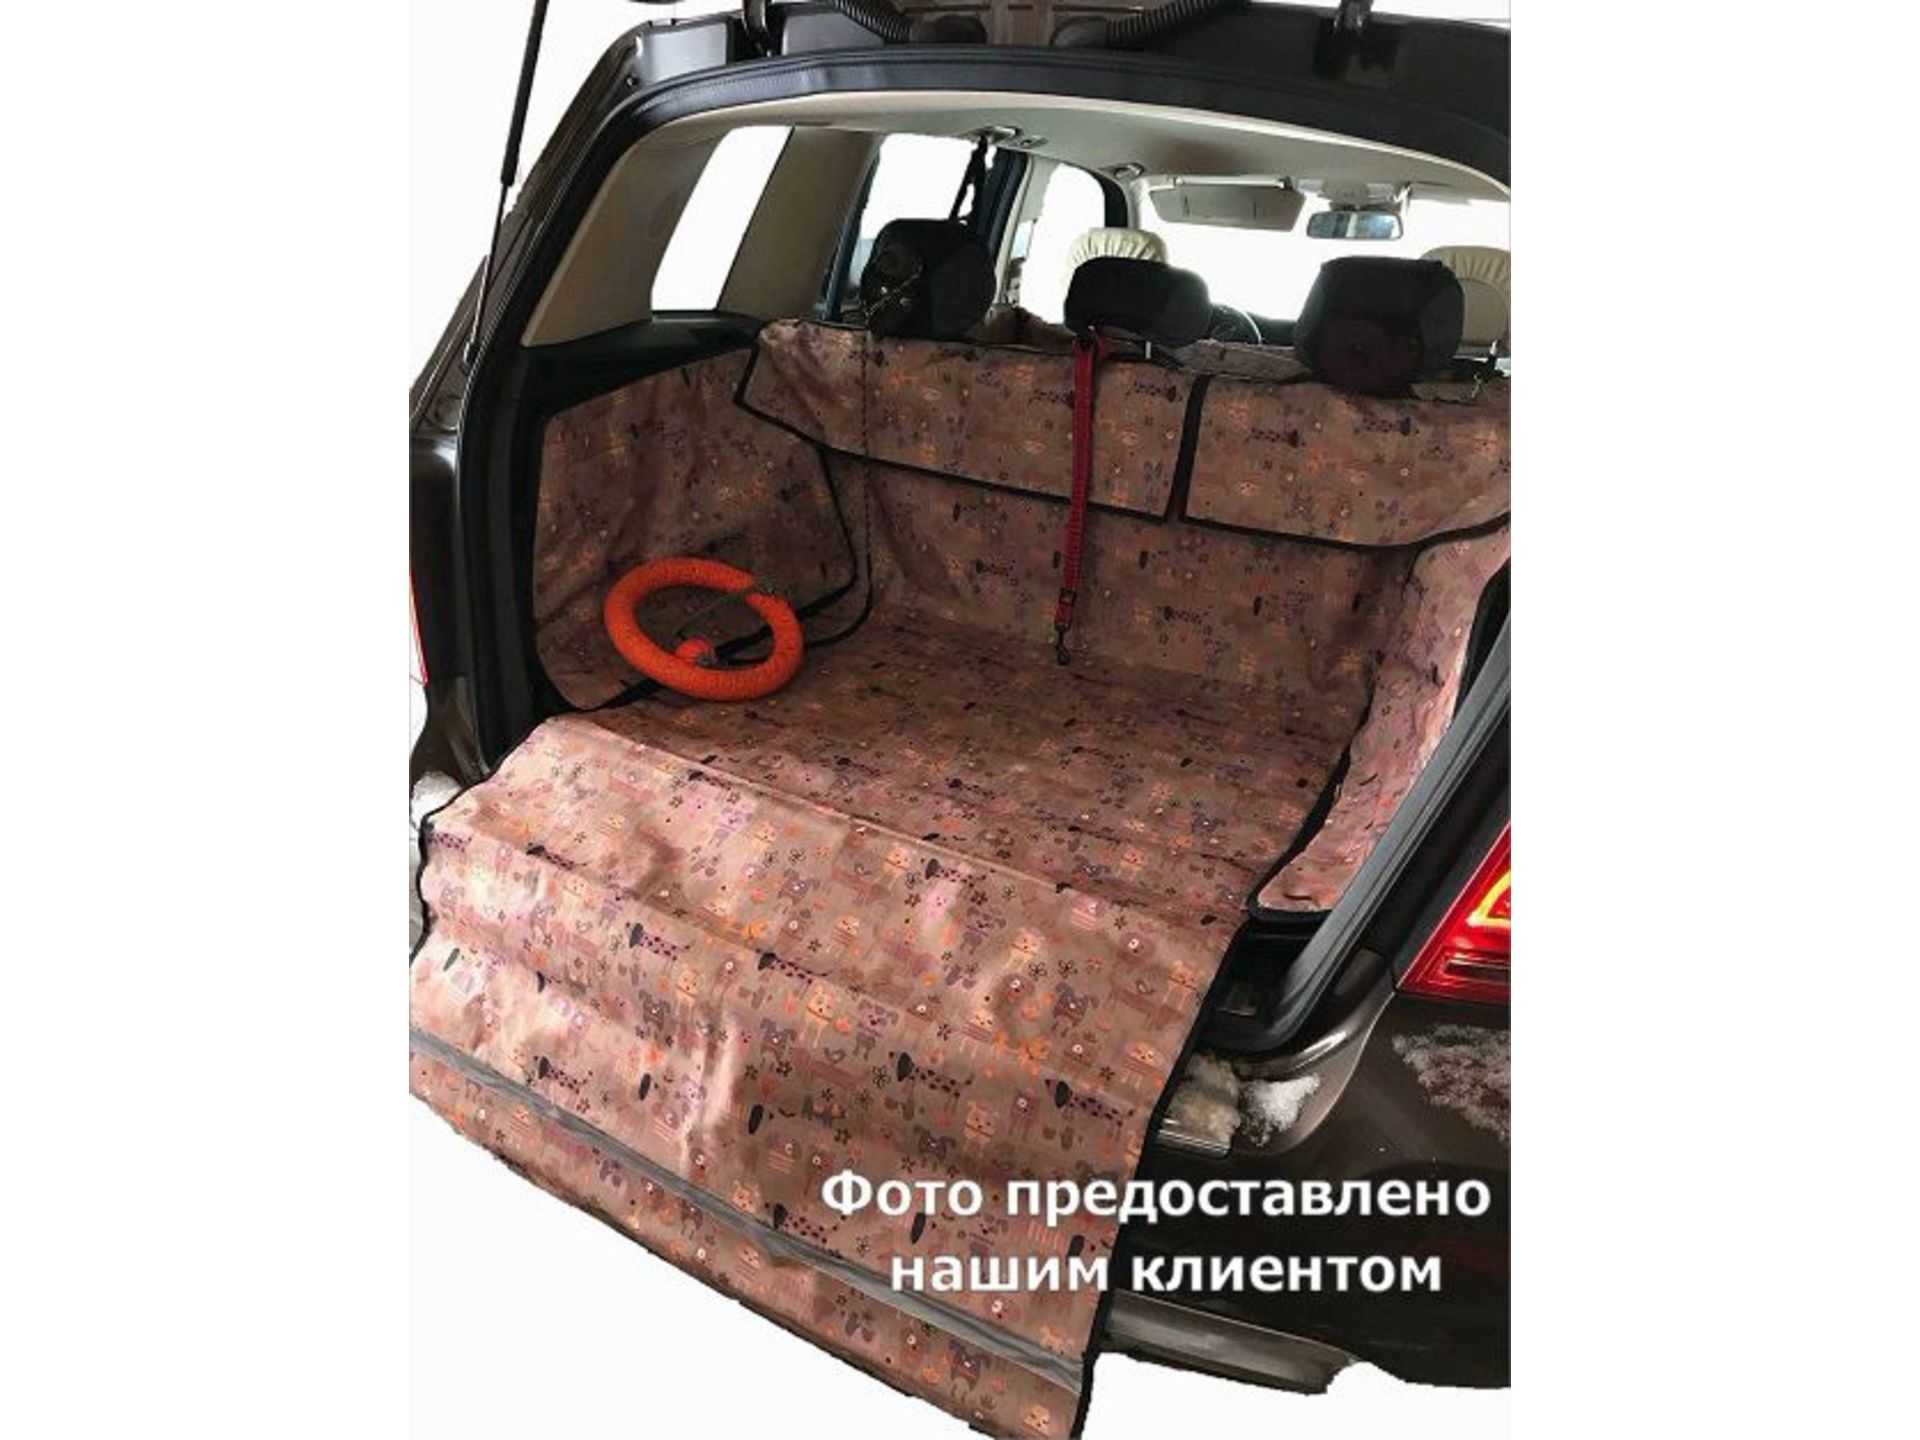 Топ-7 резиновых ковриков в багажник авто: как выбрать, цены, отзывы